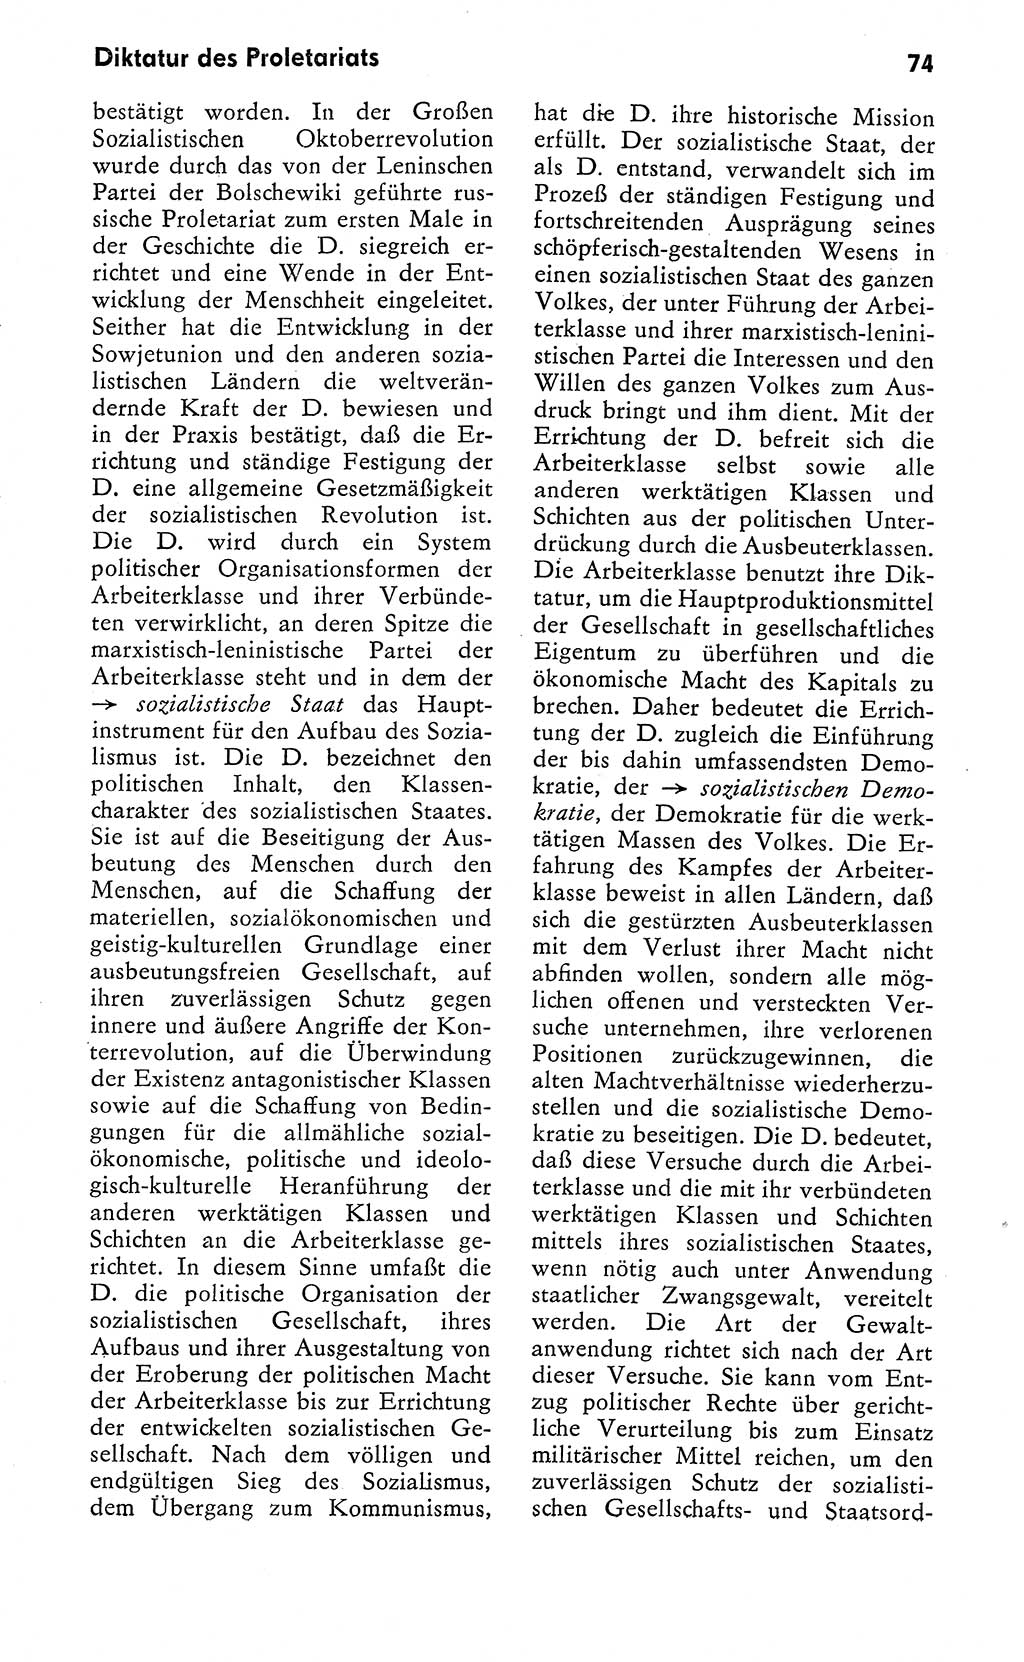 Wörterbuch zum sozialistischen Staat [Deutsche Demokratische Republik (DDR)] 1974, Seite 74 (Wb. soz. St. DDR 1974, S. 74)